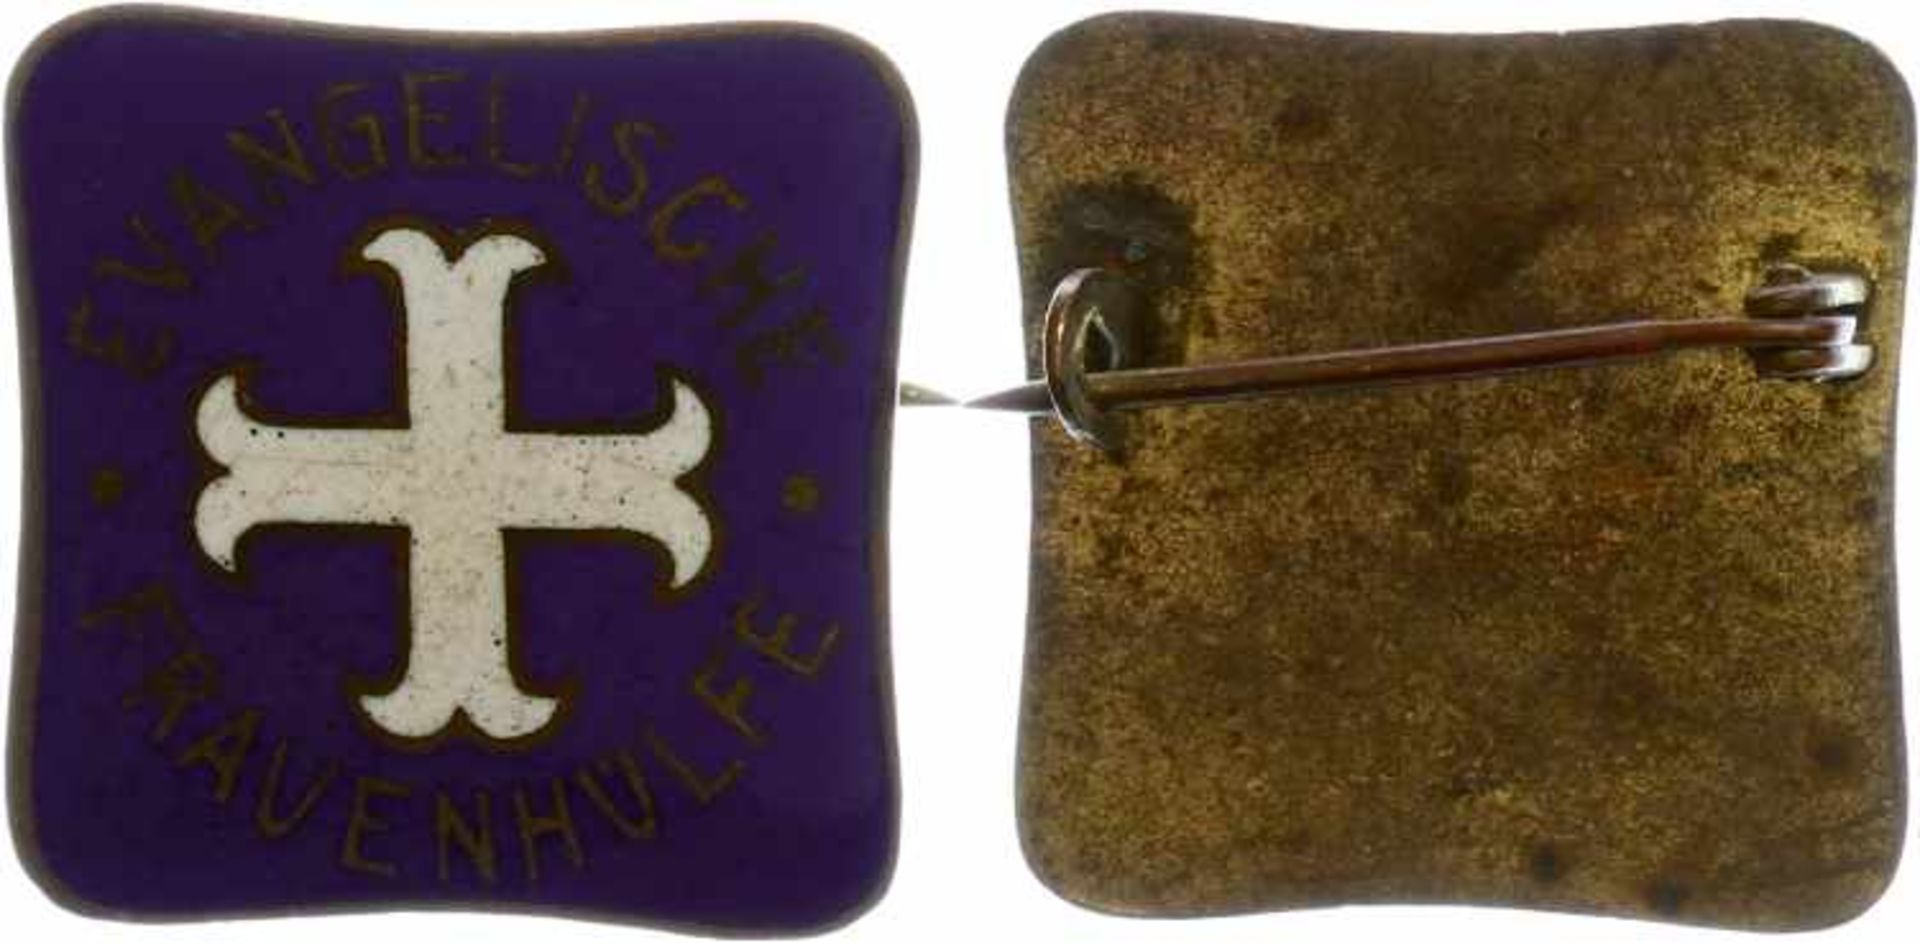 Kleinabzeichen, Mitgliedsnadeln 1871-1945 Evangelische Frauenhilfe, Mitgliedsabzeichen, 5. Form "